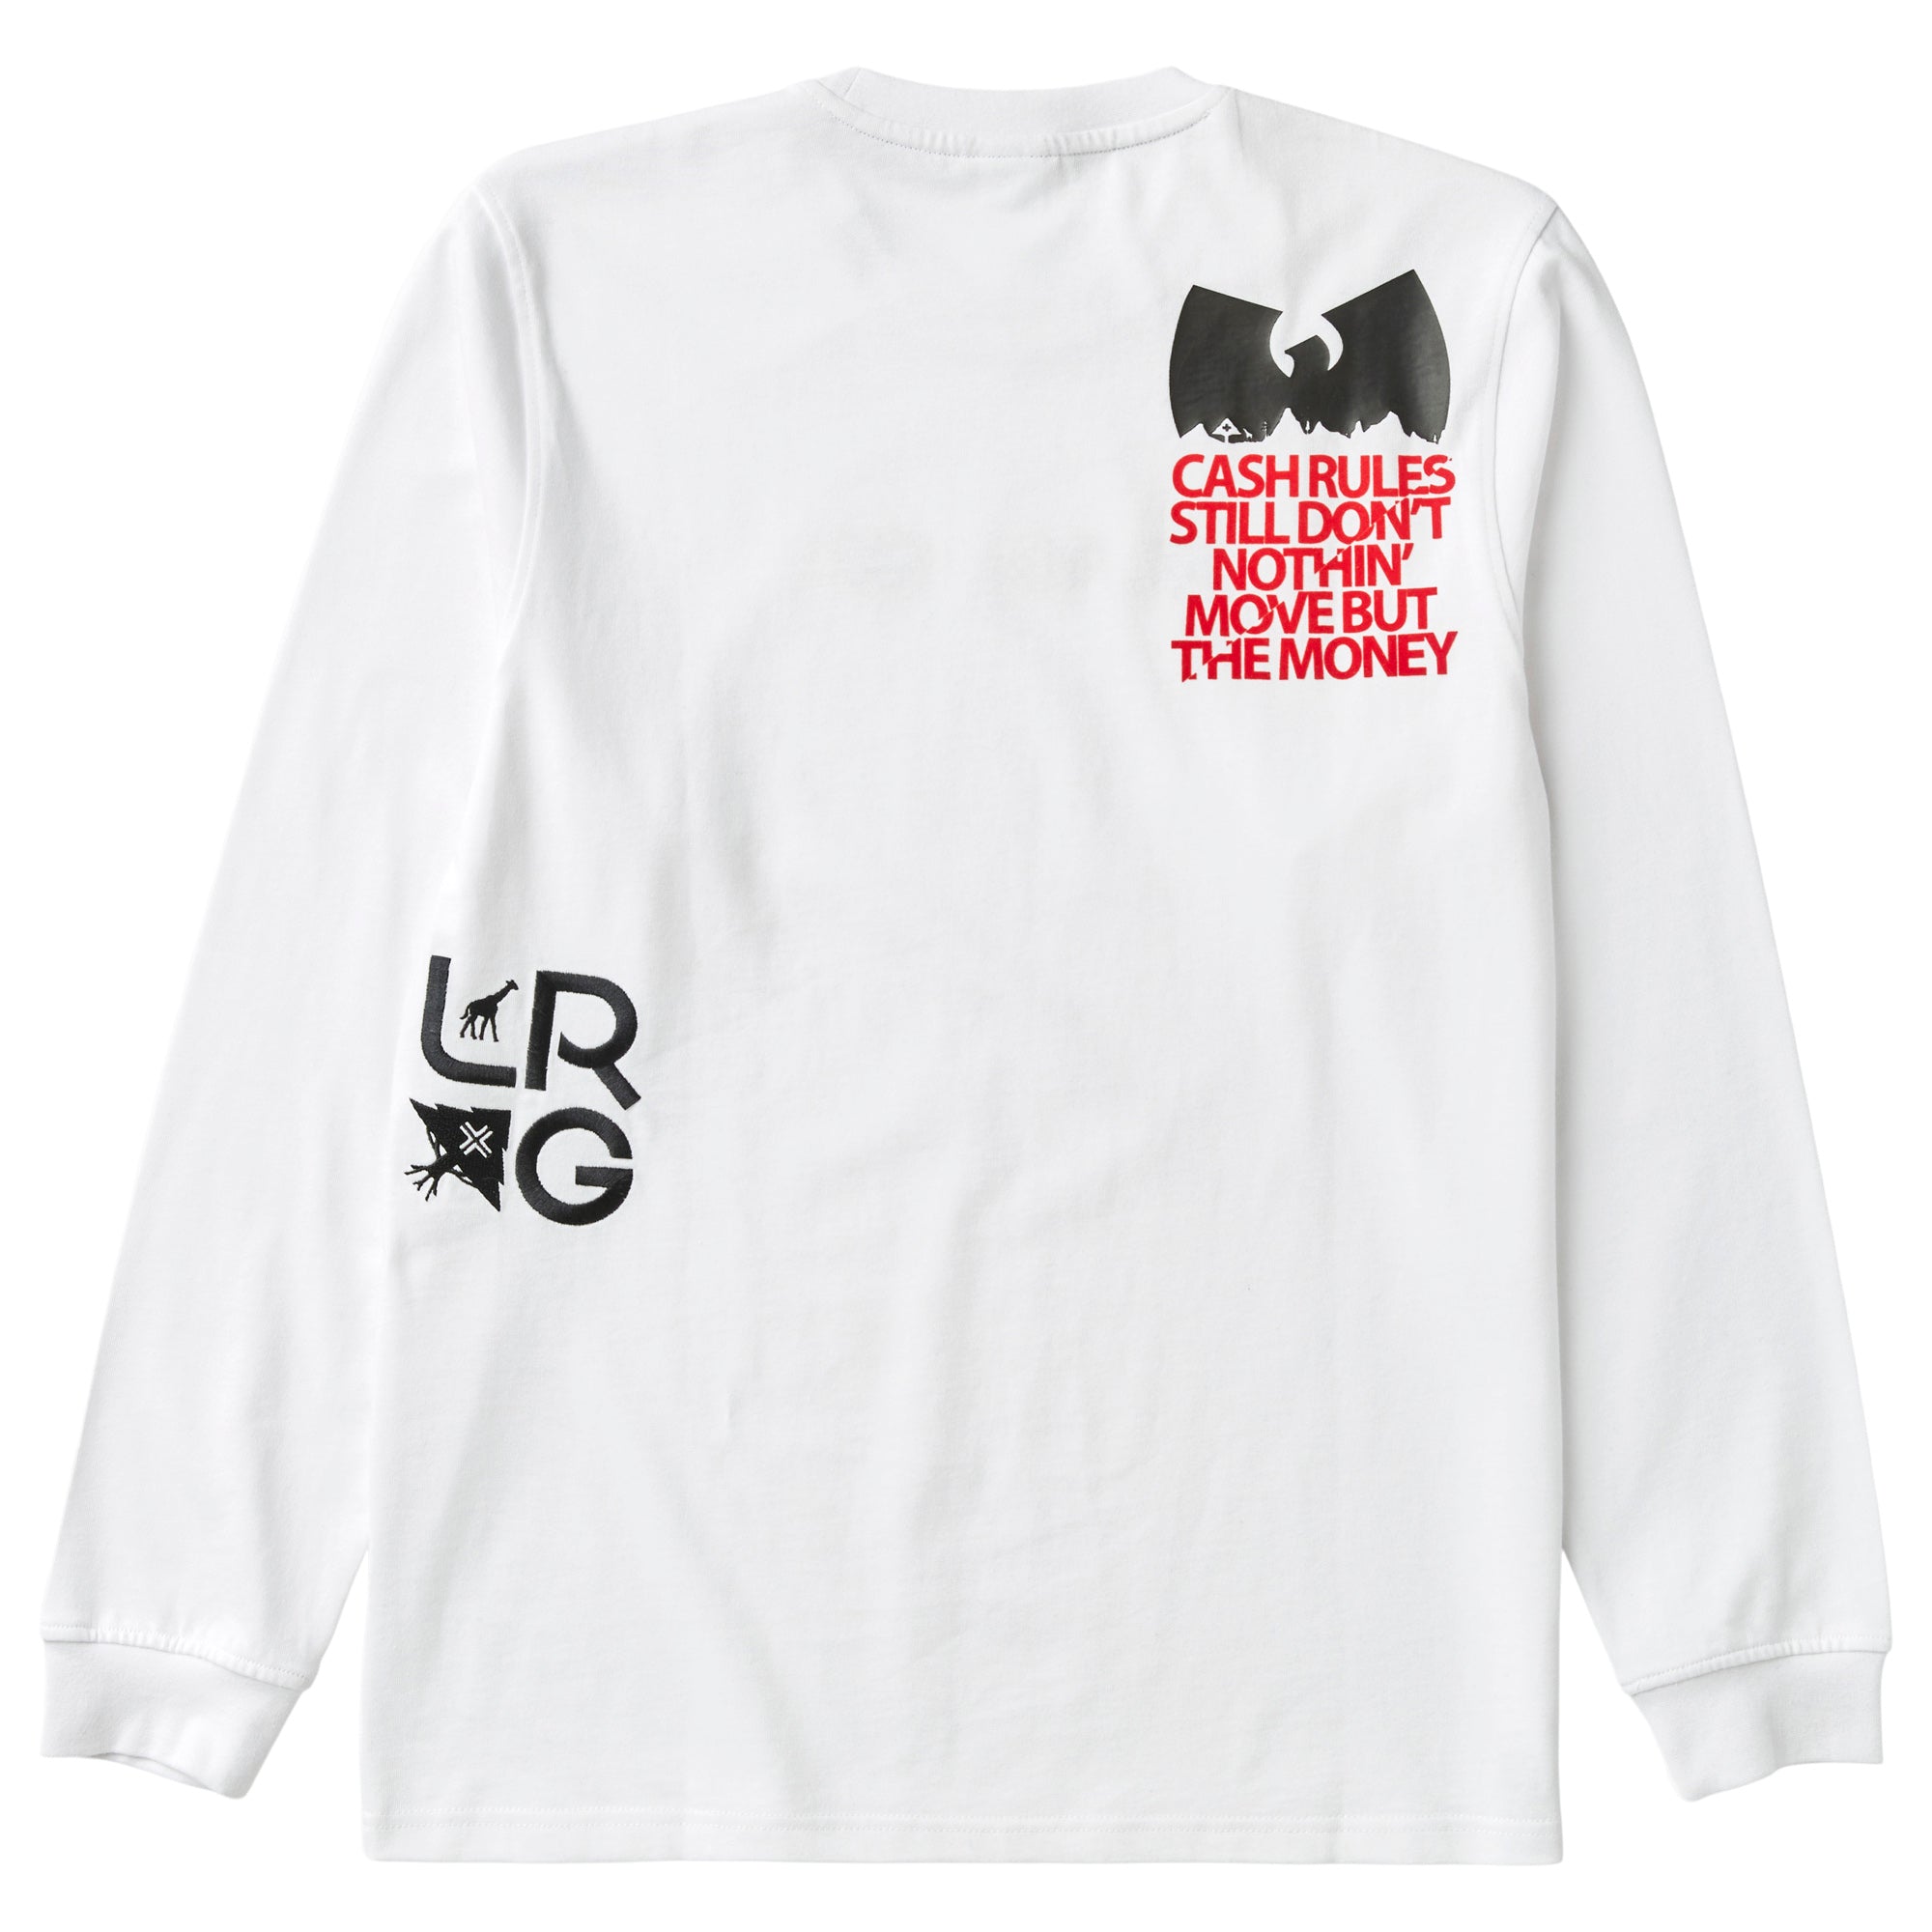 LRG X Wu-Tang Life Is Hectic T-Shirt L35TMSCXX-BL30 - Shiekh